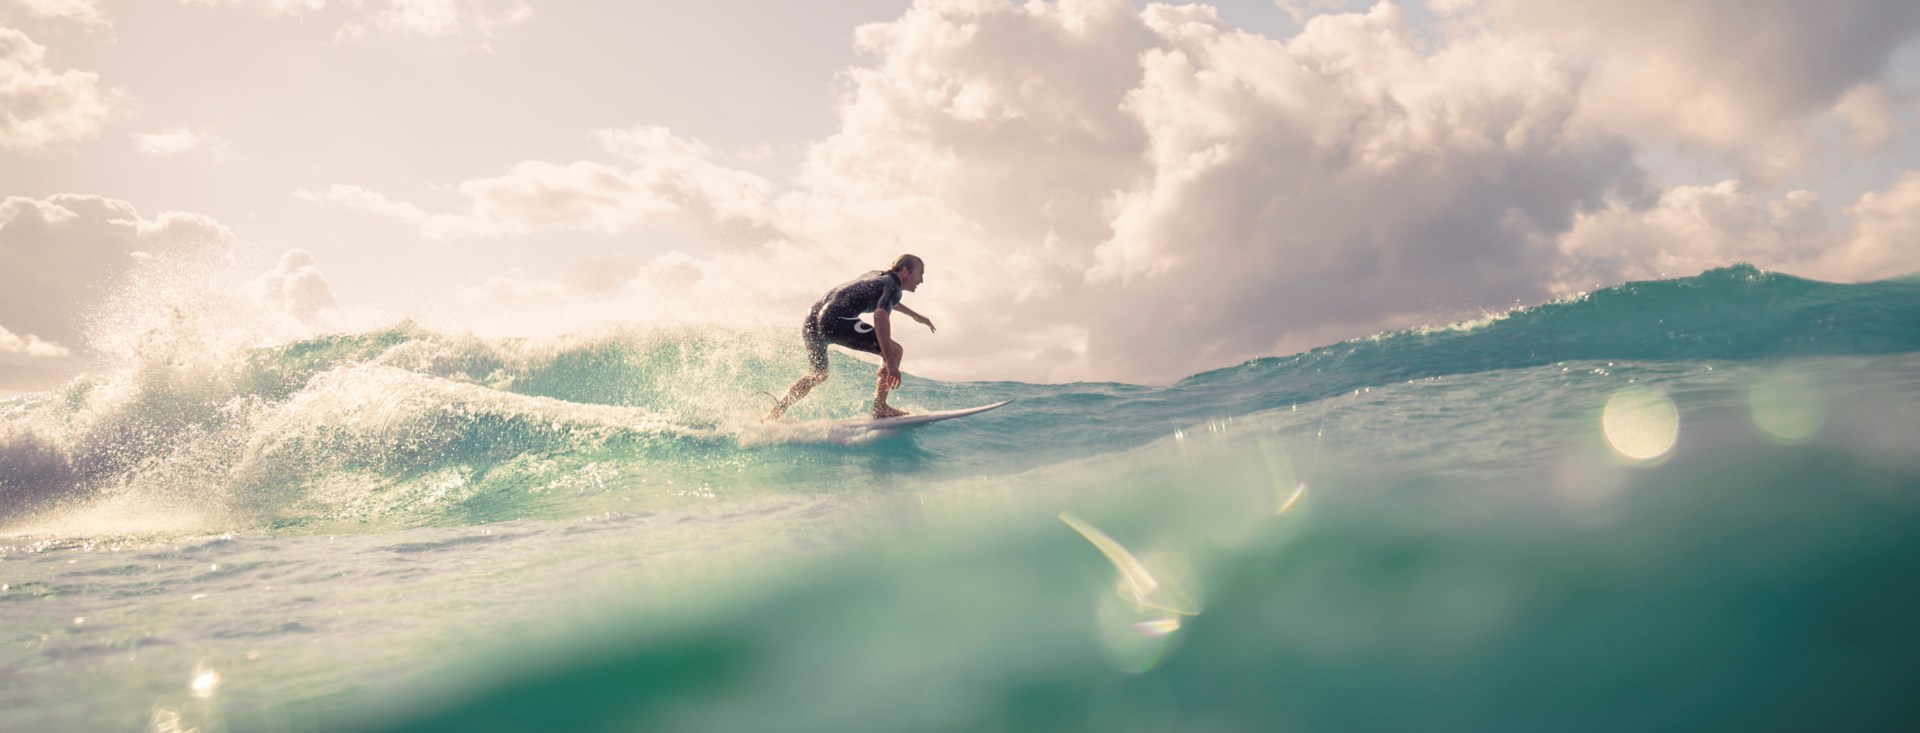 Activities: Surfing